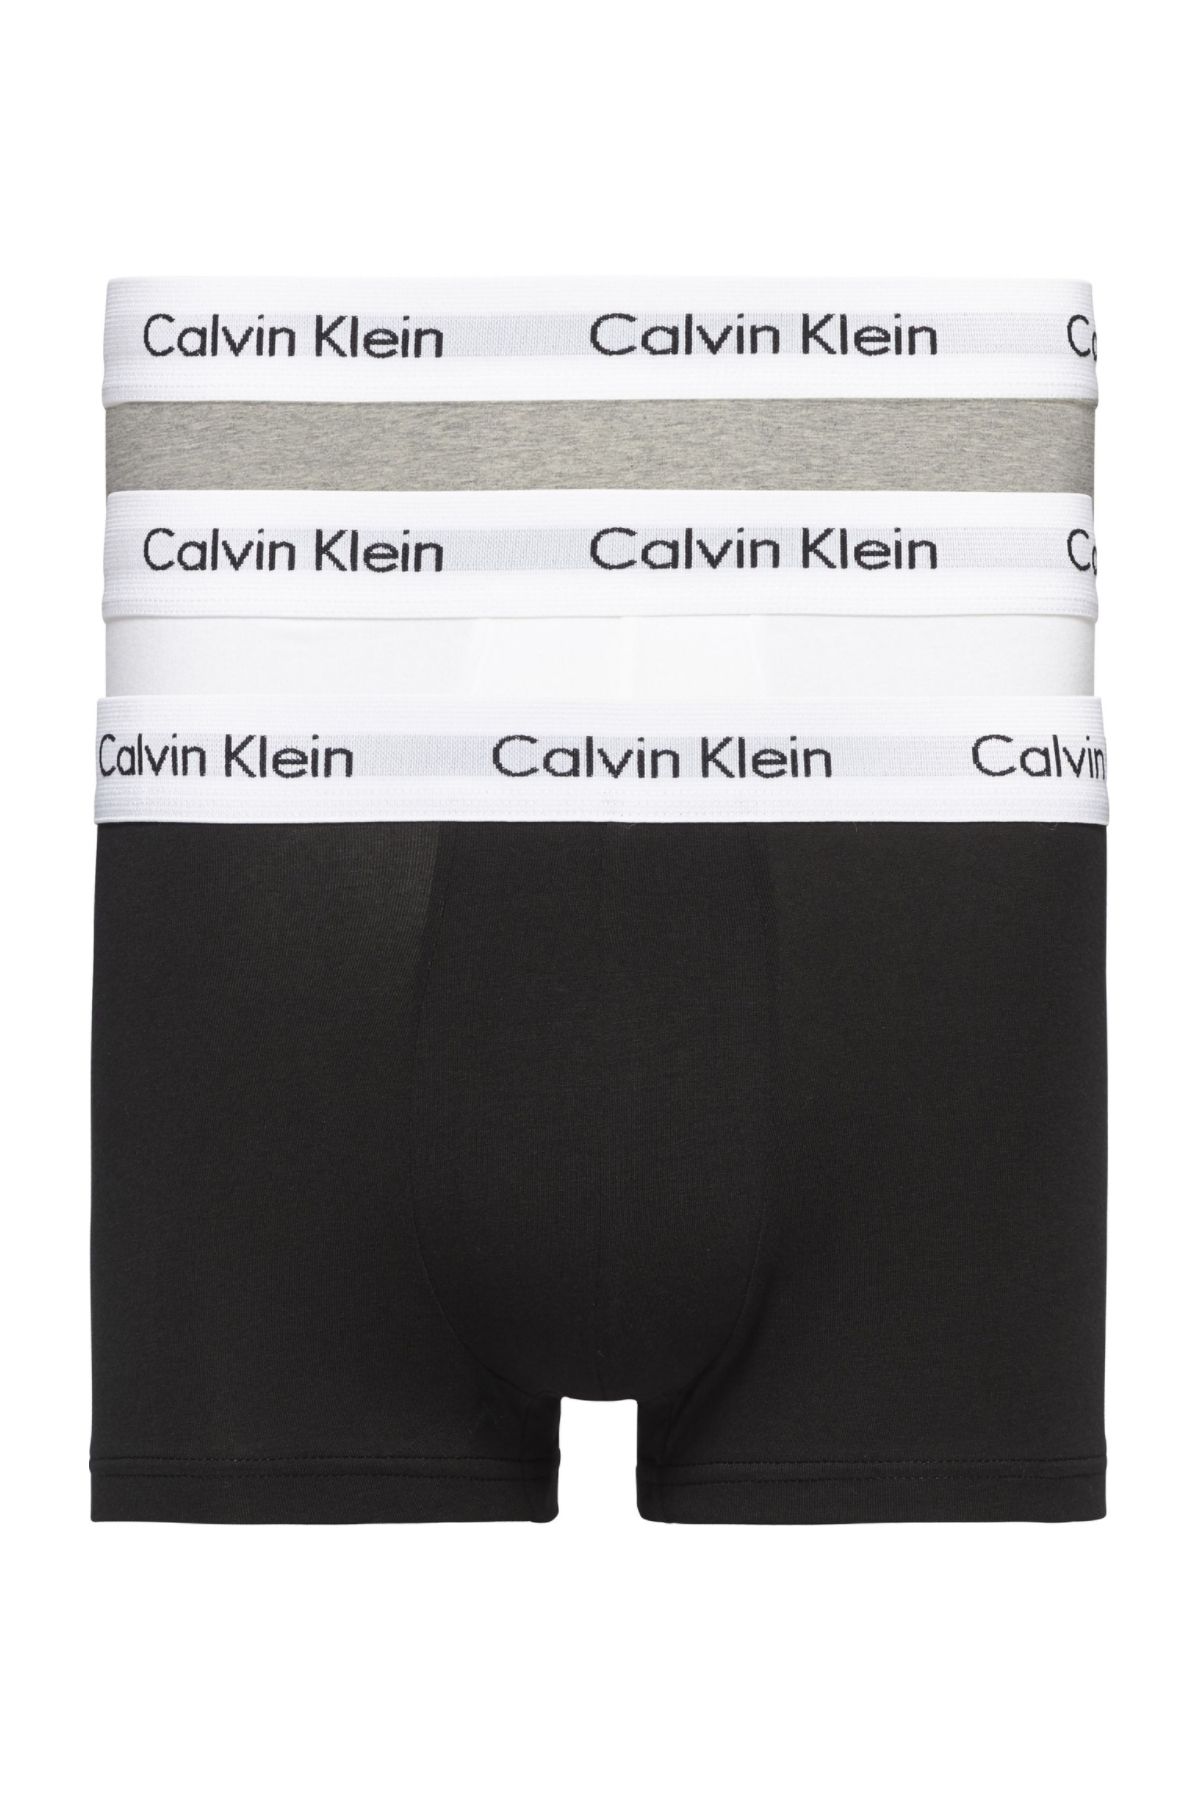 Calvin Klein Erkek Marka Logolu Elastik Bantlı Günlük Kullanıma Uygun Siyah-beyaz-gri Boxer U2664g-998